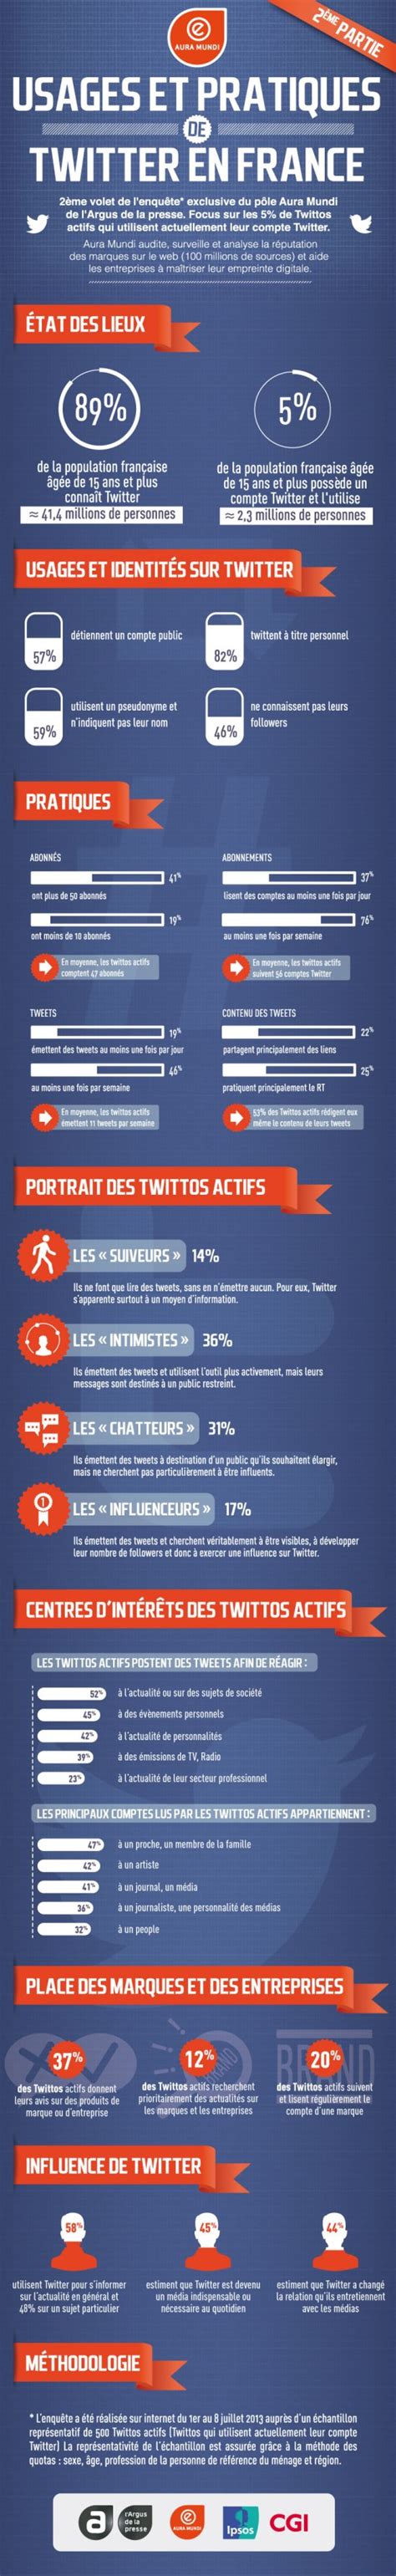 Infographie Les Usagers De Twitter En France